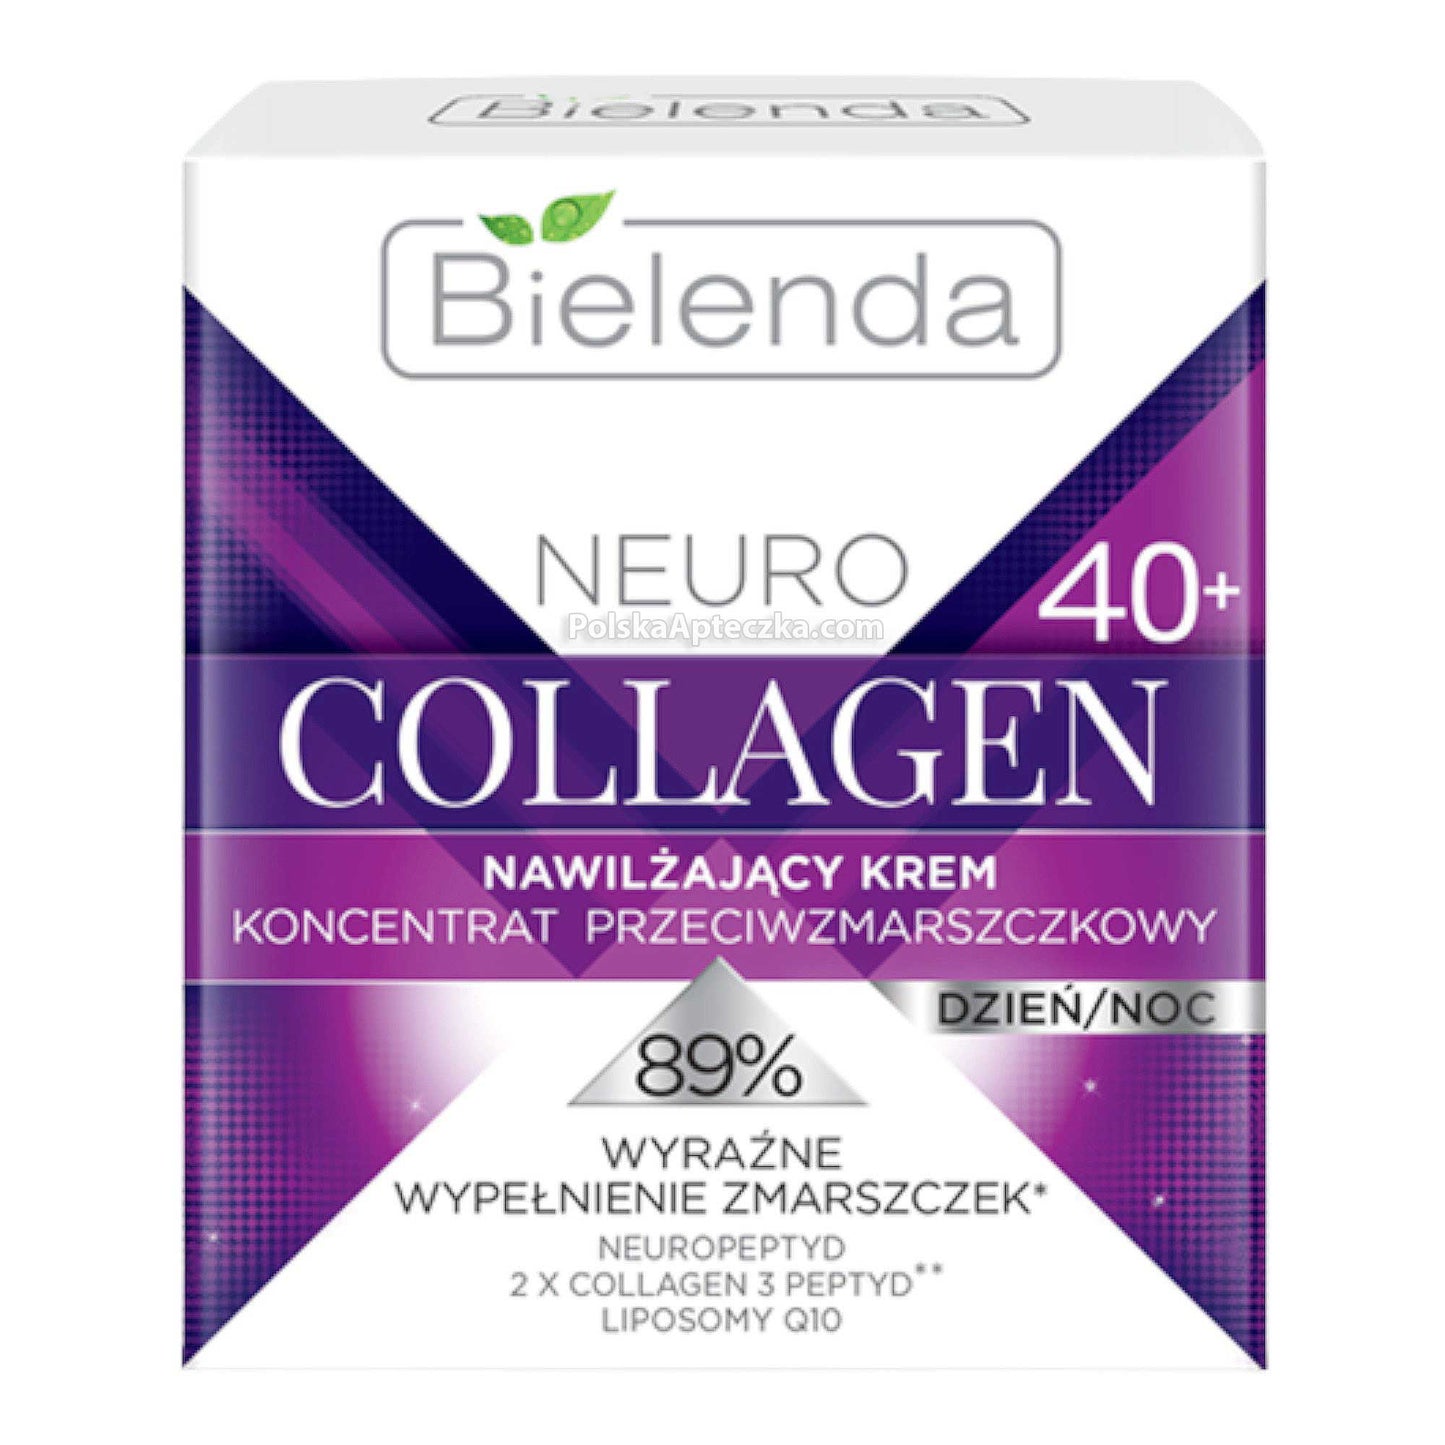 Bielenda, Neuro Collagen, 40+ krem przeciwzmarszczkowy na dzień i noc 50 ml